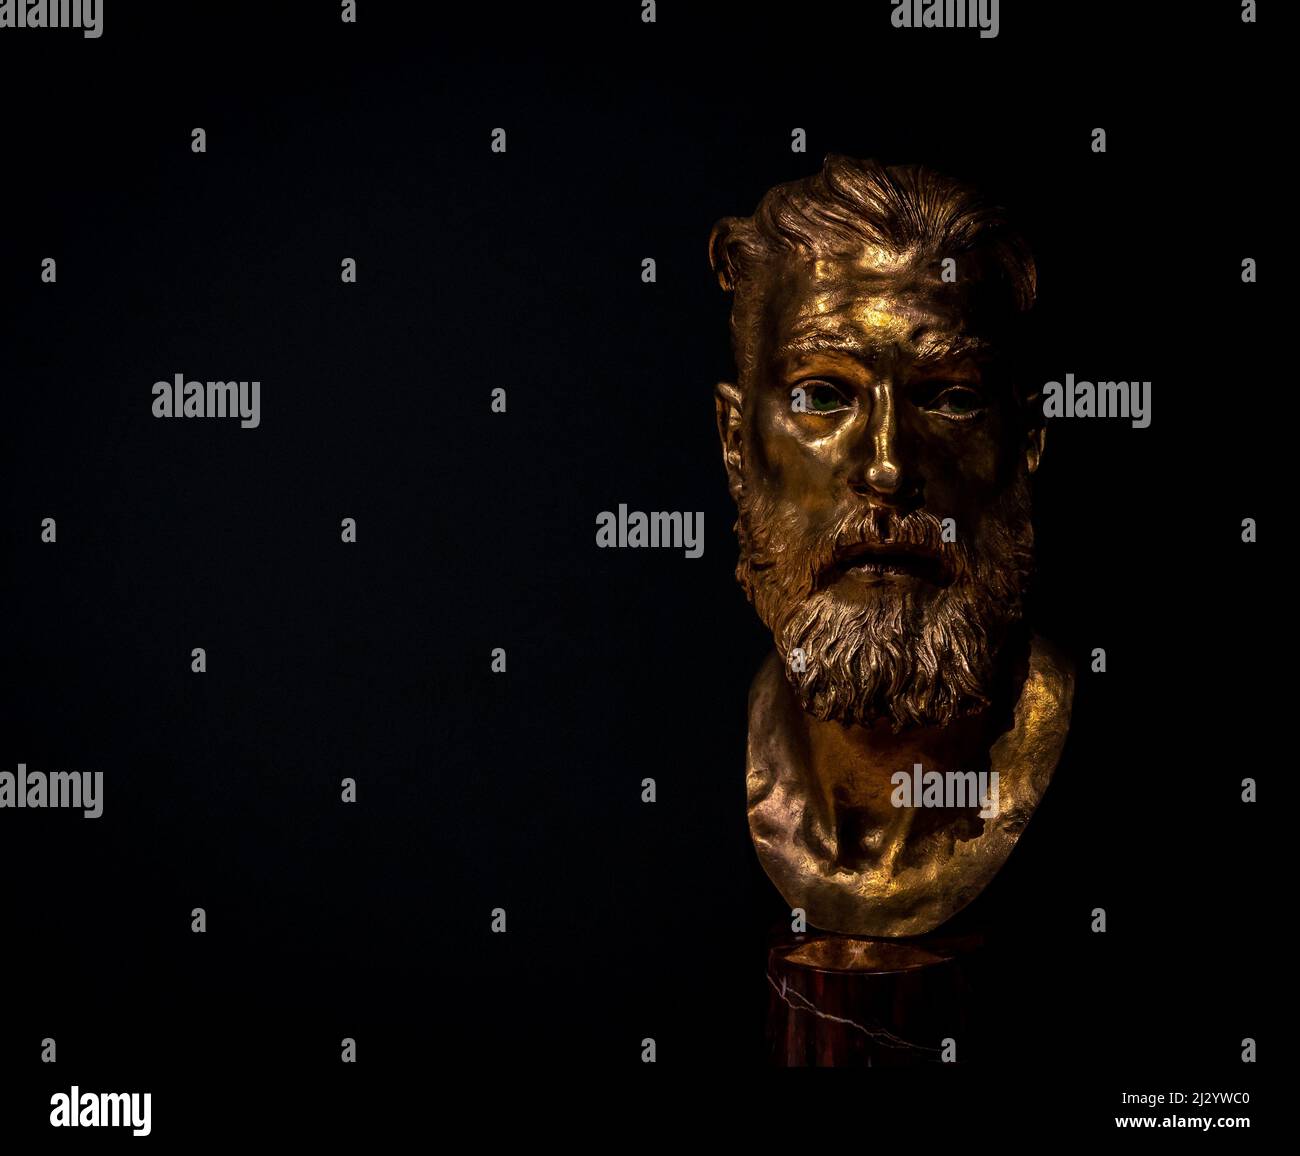 Età d'oro 3 - scultura in bronzo dell'artista Livio Scarpella esposta al Museo d'Arte moderna e Contemporanea - Mart - Rovereto - Italia Foto Stock